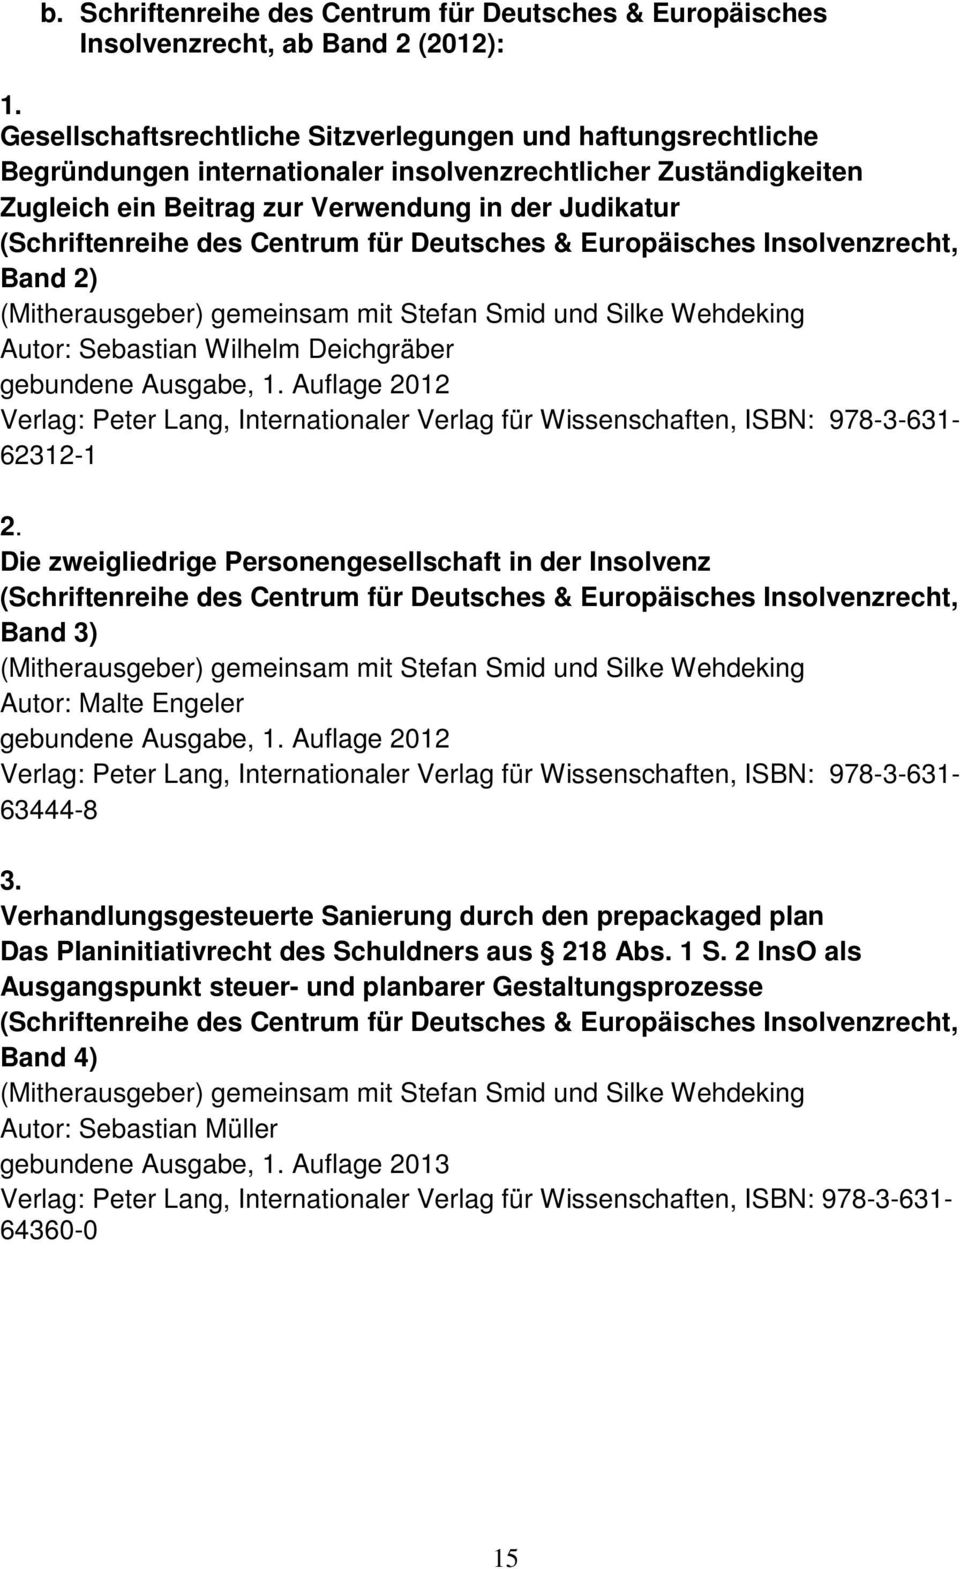 Autor: Sebastian Wilhelm Deichgräber gebundene Ausgabe, 1. Auflage 2012 62312-1 2. Die zweigliedrige Personengesellschaft in der Insolvenz Band 3) Autor: Malte Engeler gebundene Ausgabe, 1.